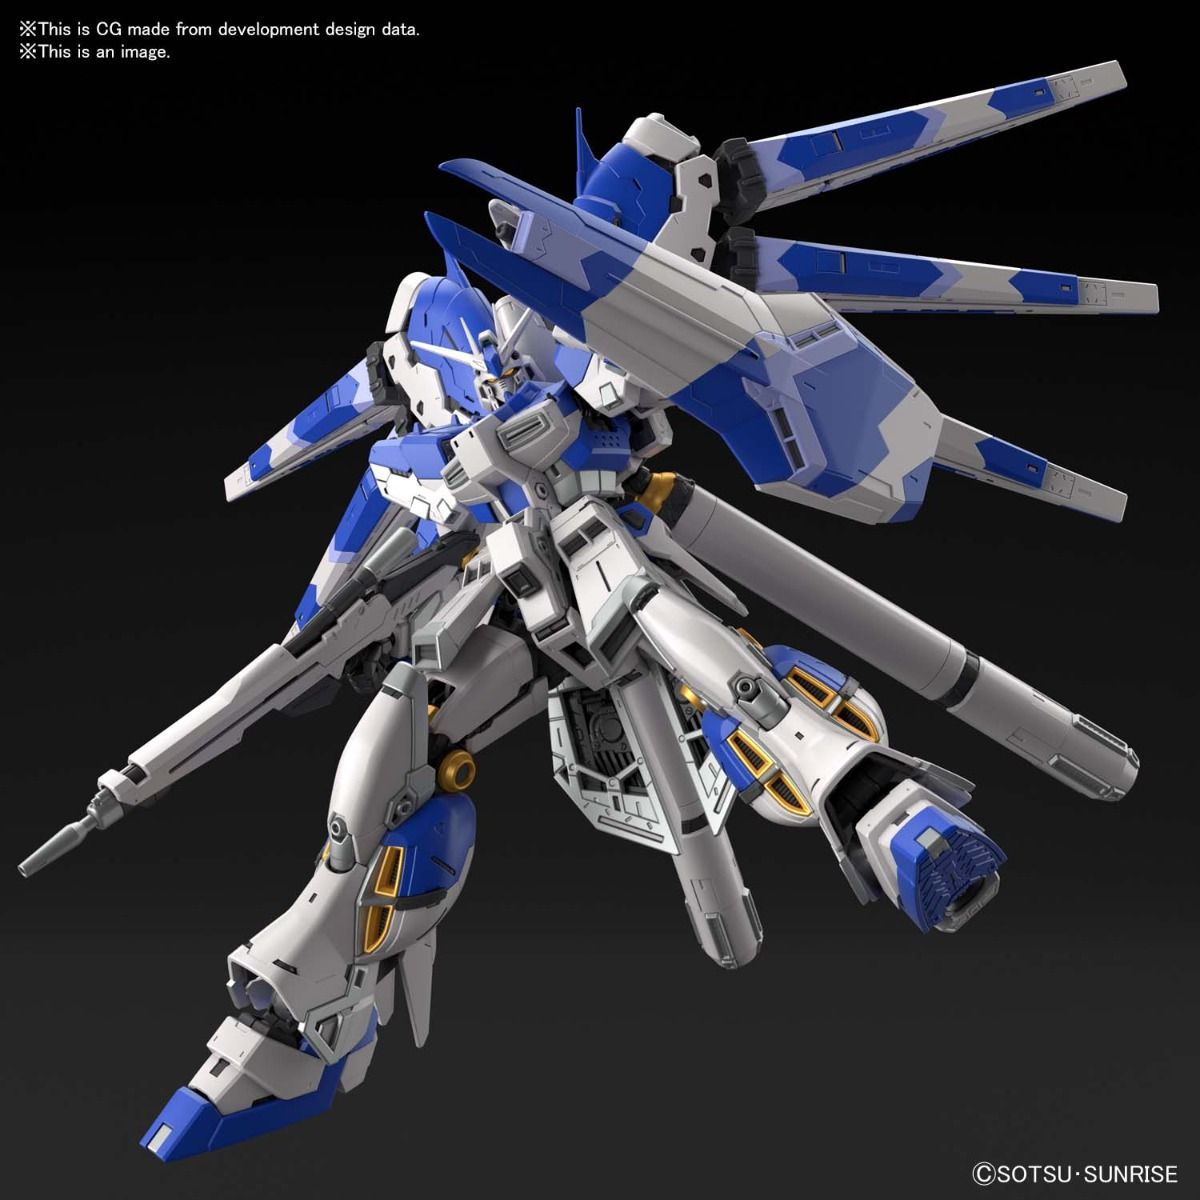 RG 1/144 RX-93 v2 Hi-nu Gundam